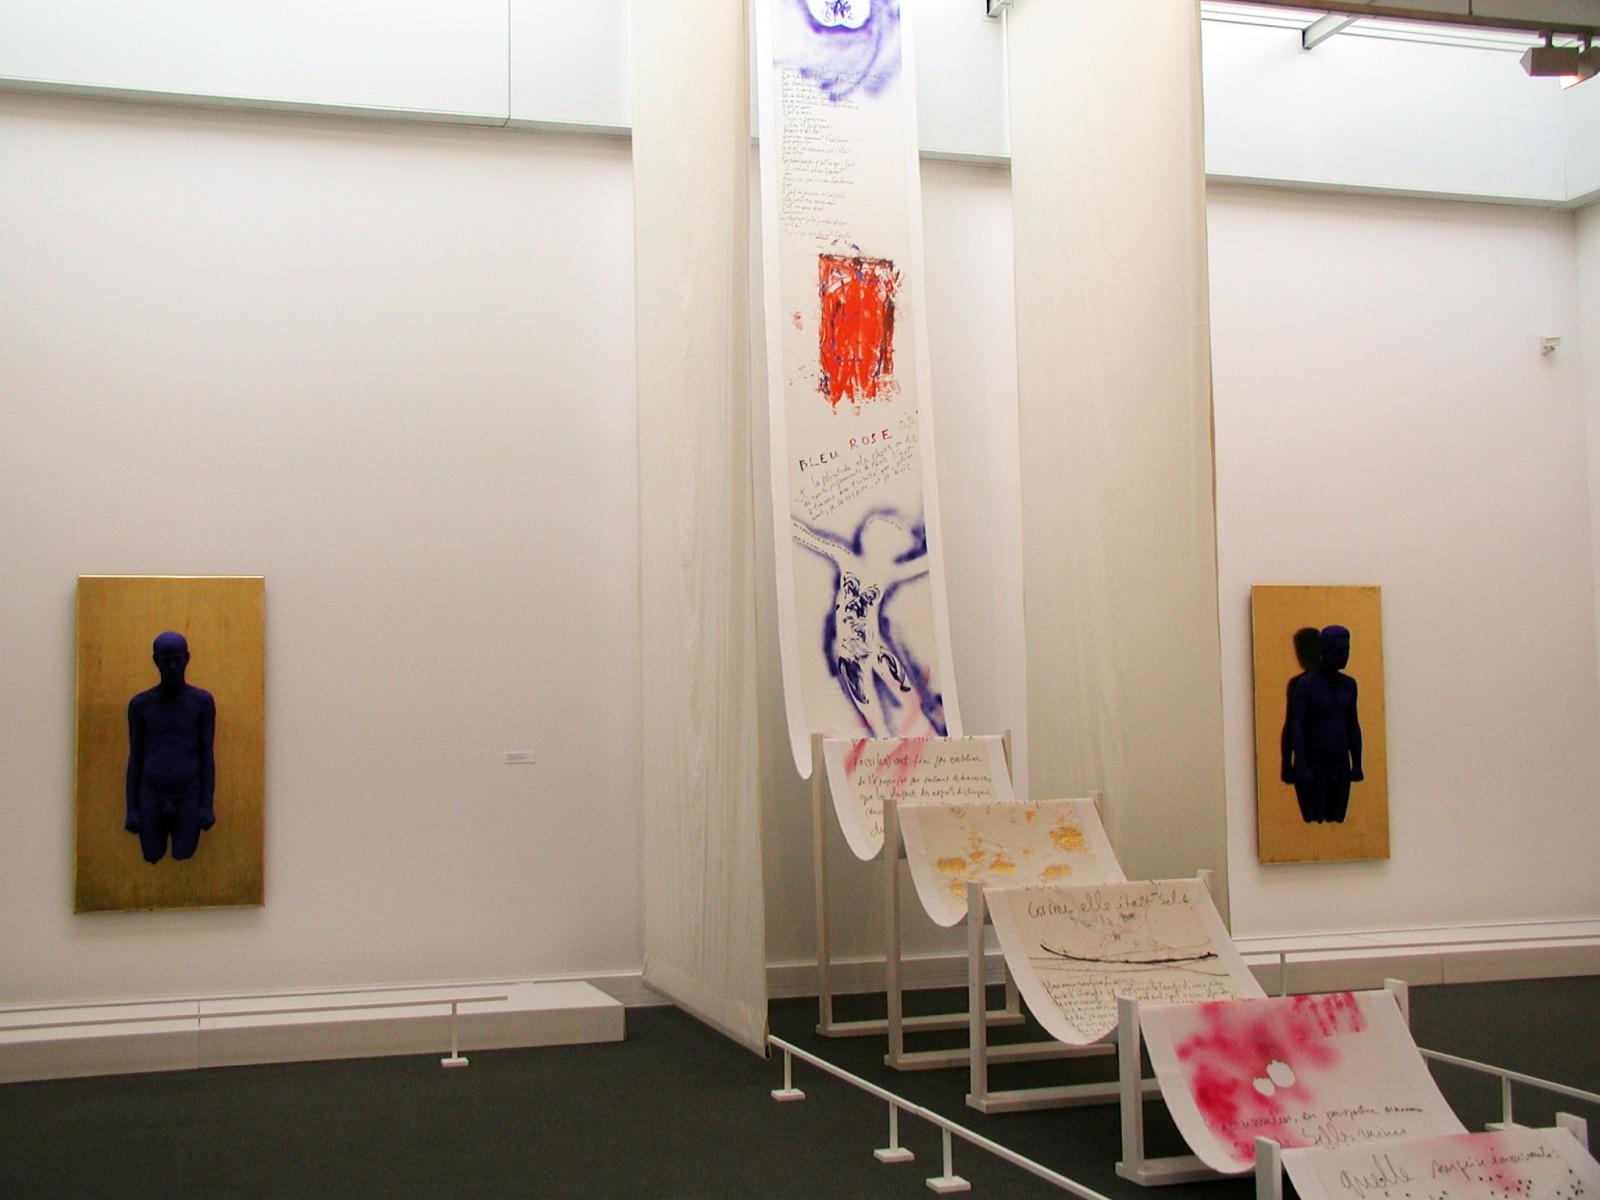 View of the exhibition, "Yves Klein, "La vita, la vita stessa che é l'arte assoluta", Museo Pecci, 2000